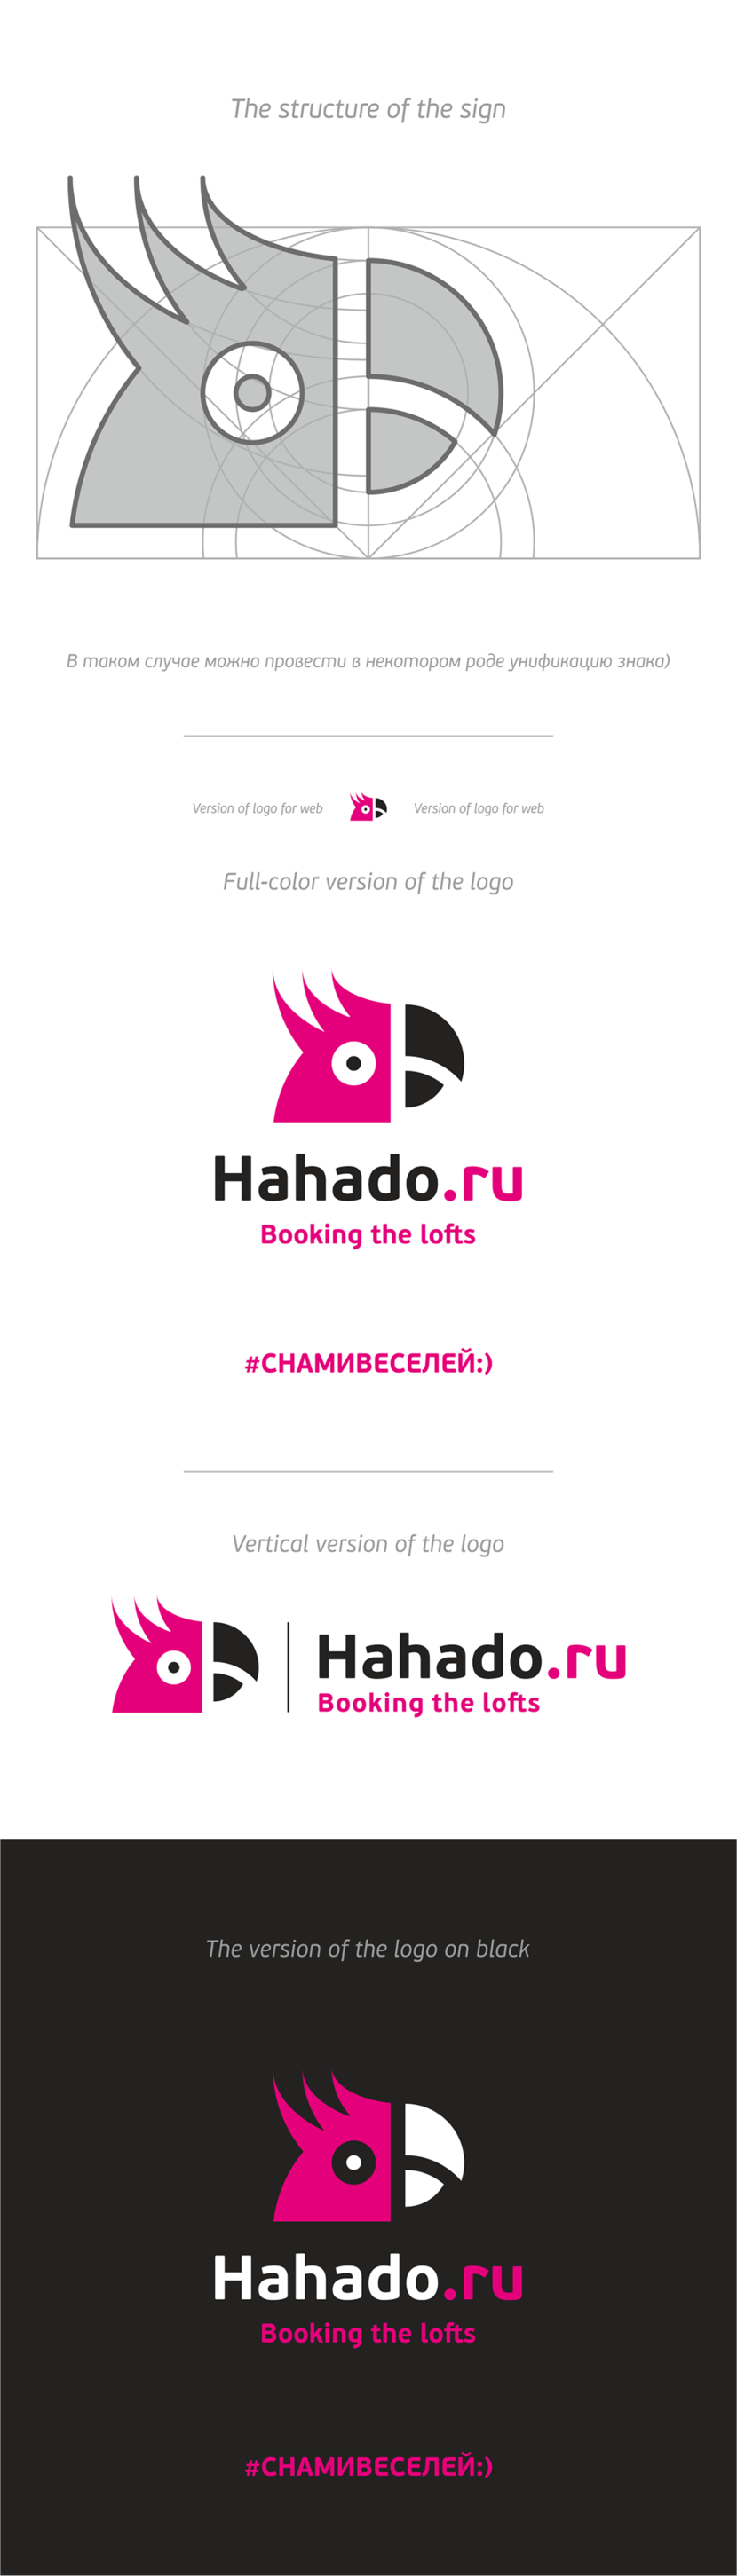 + Принято! Думаем выполнимо) Лого для компании hahado.ru  (Хахаду) - сервис бронирования лофтов